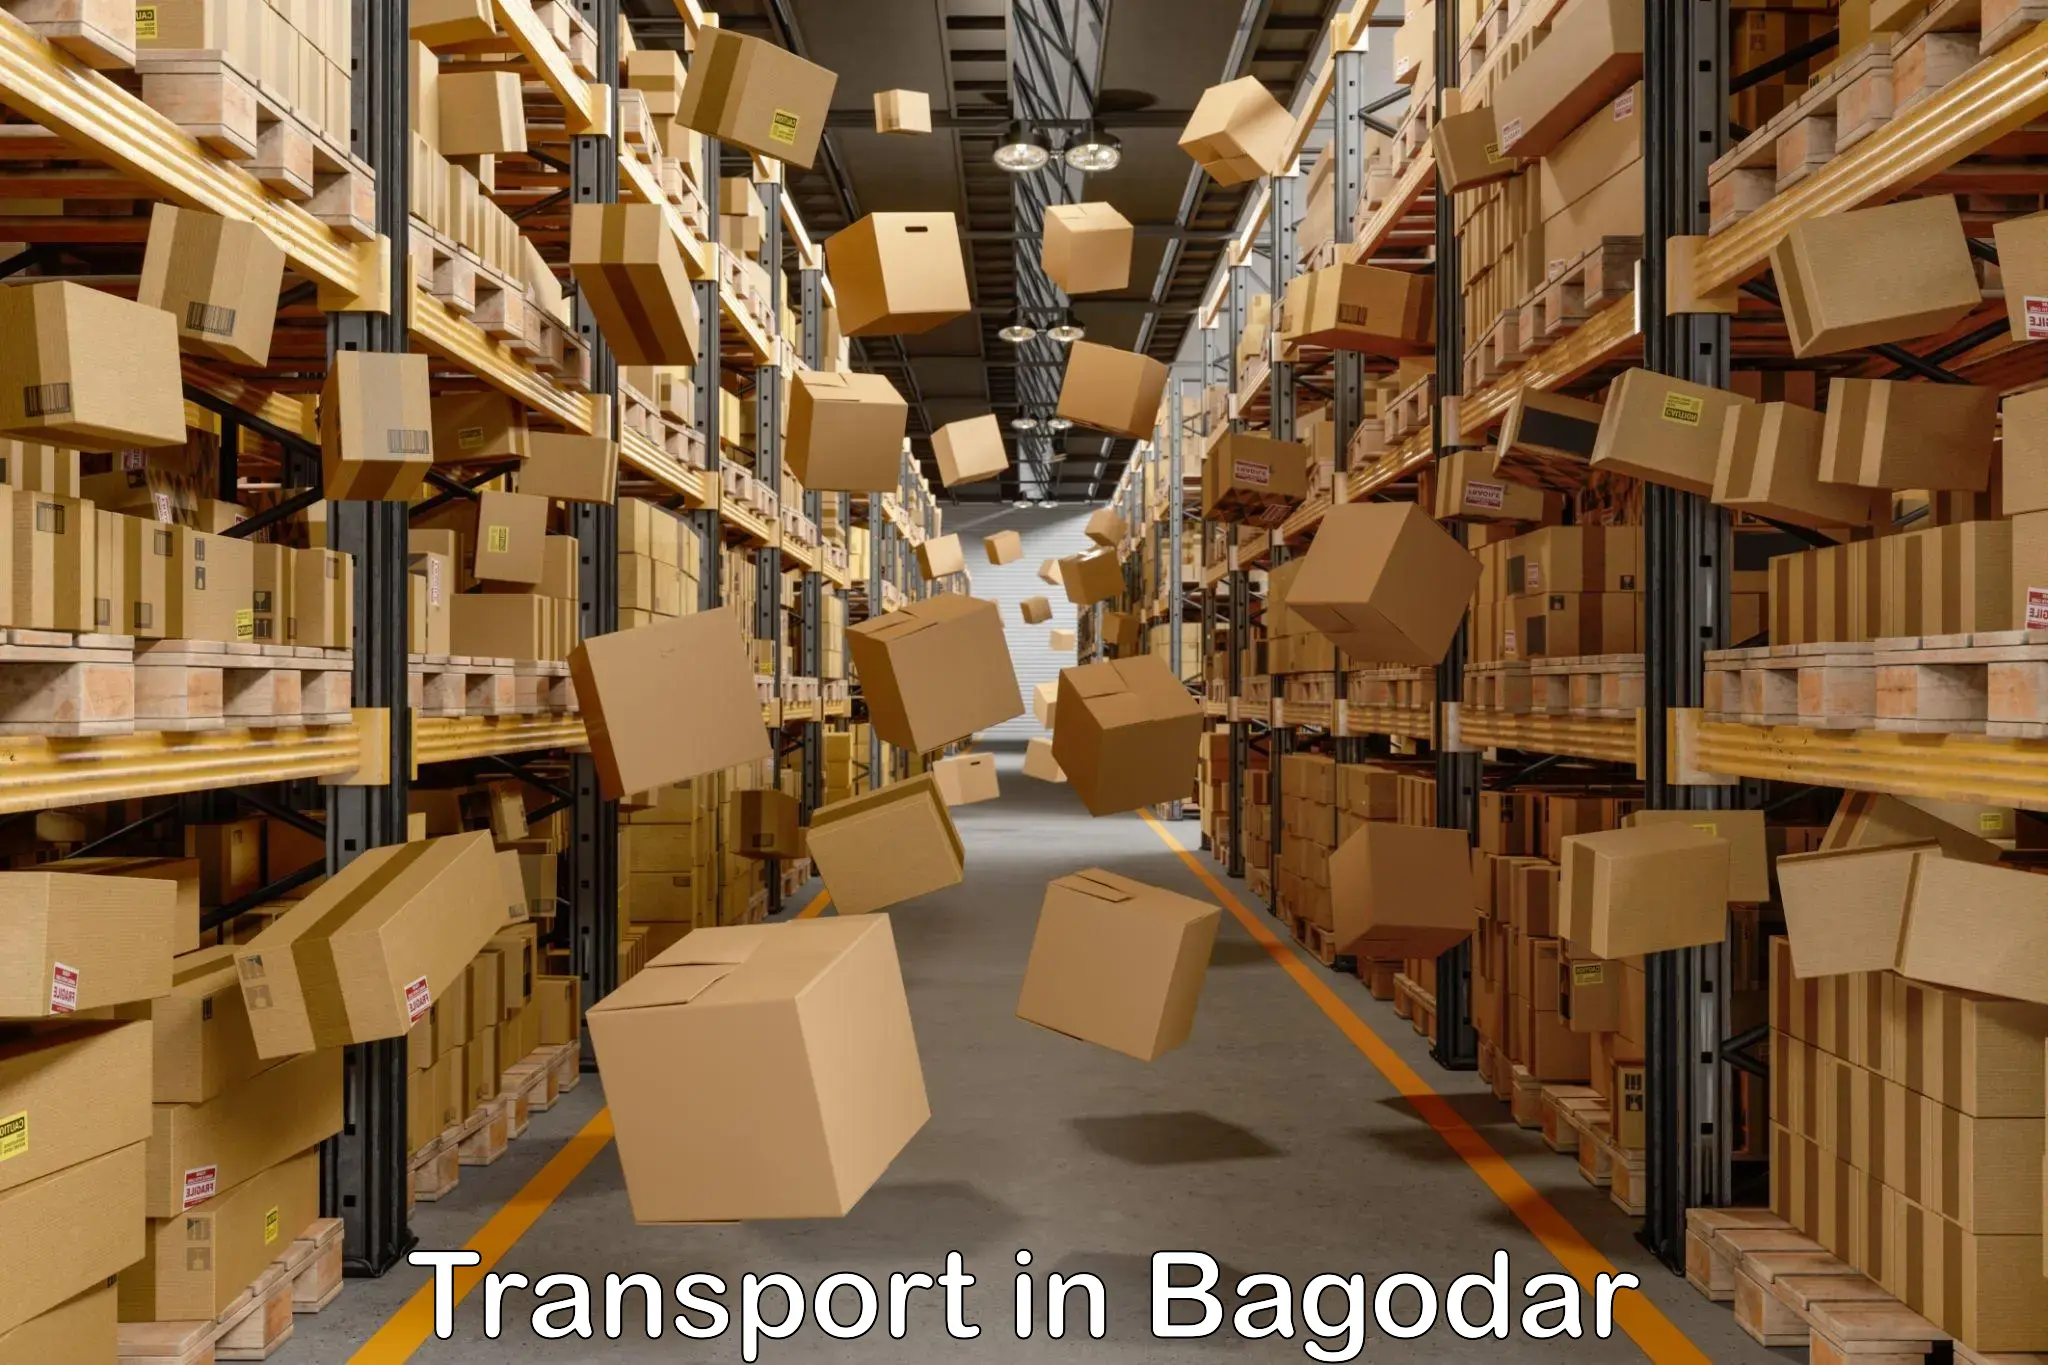 Nationwide transport services in Bagodar